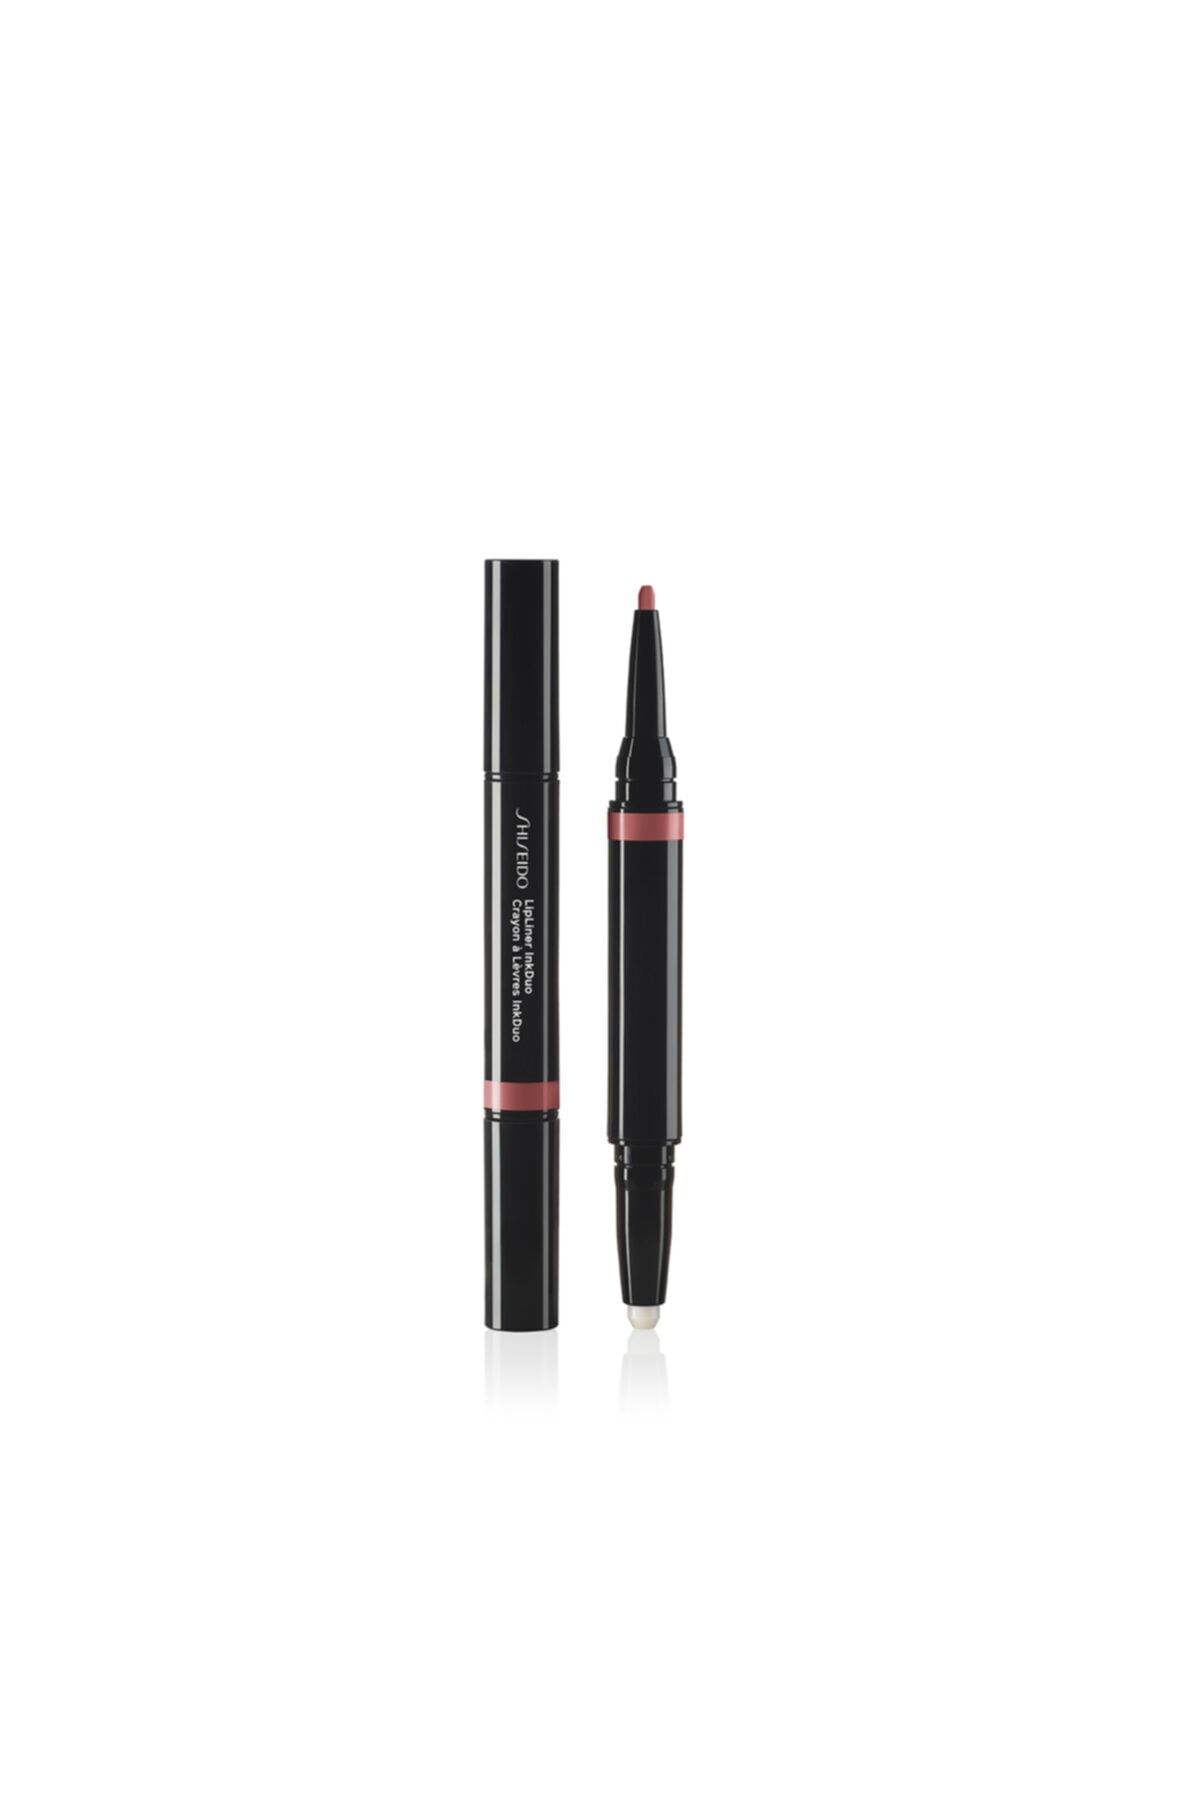 Shiseido Lipliner Inkduo 03 -2si1 Arada Dudak Bazı Ve Kontür Kalemi